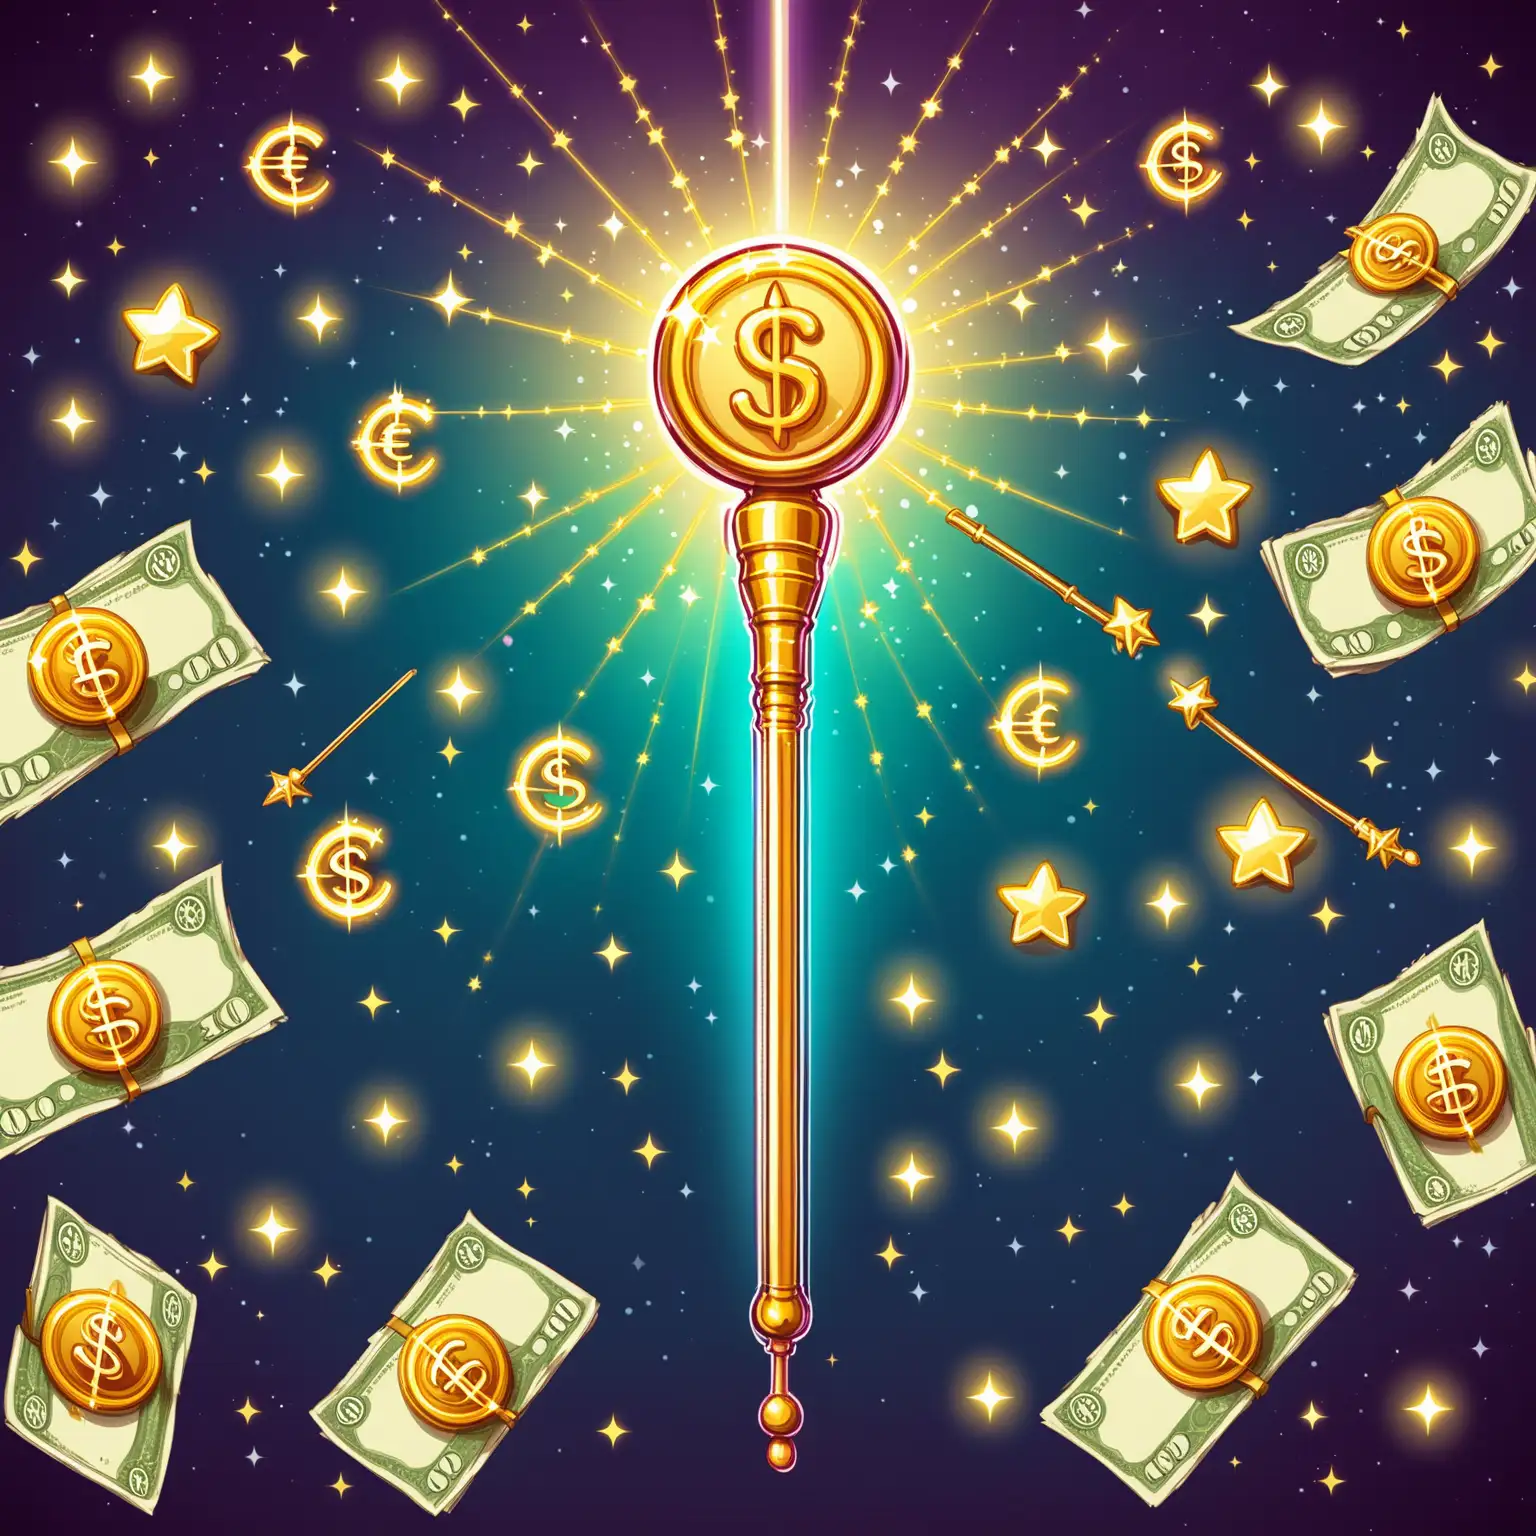 Enchanting Magic Wand with Money Symbols